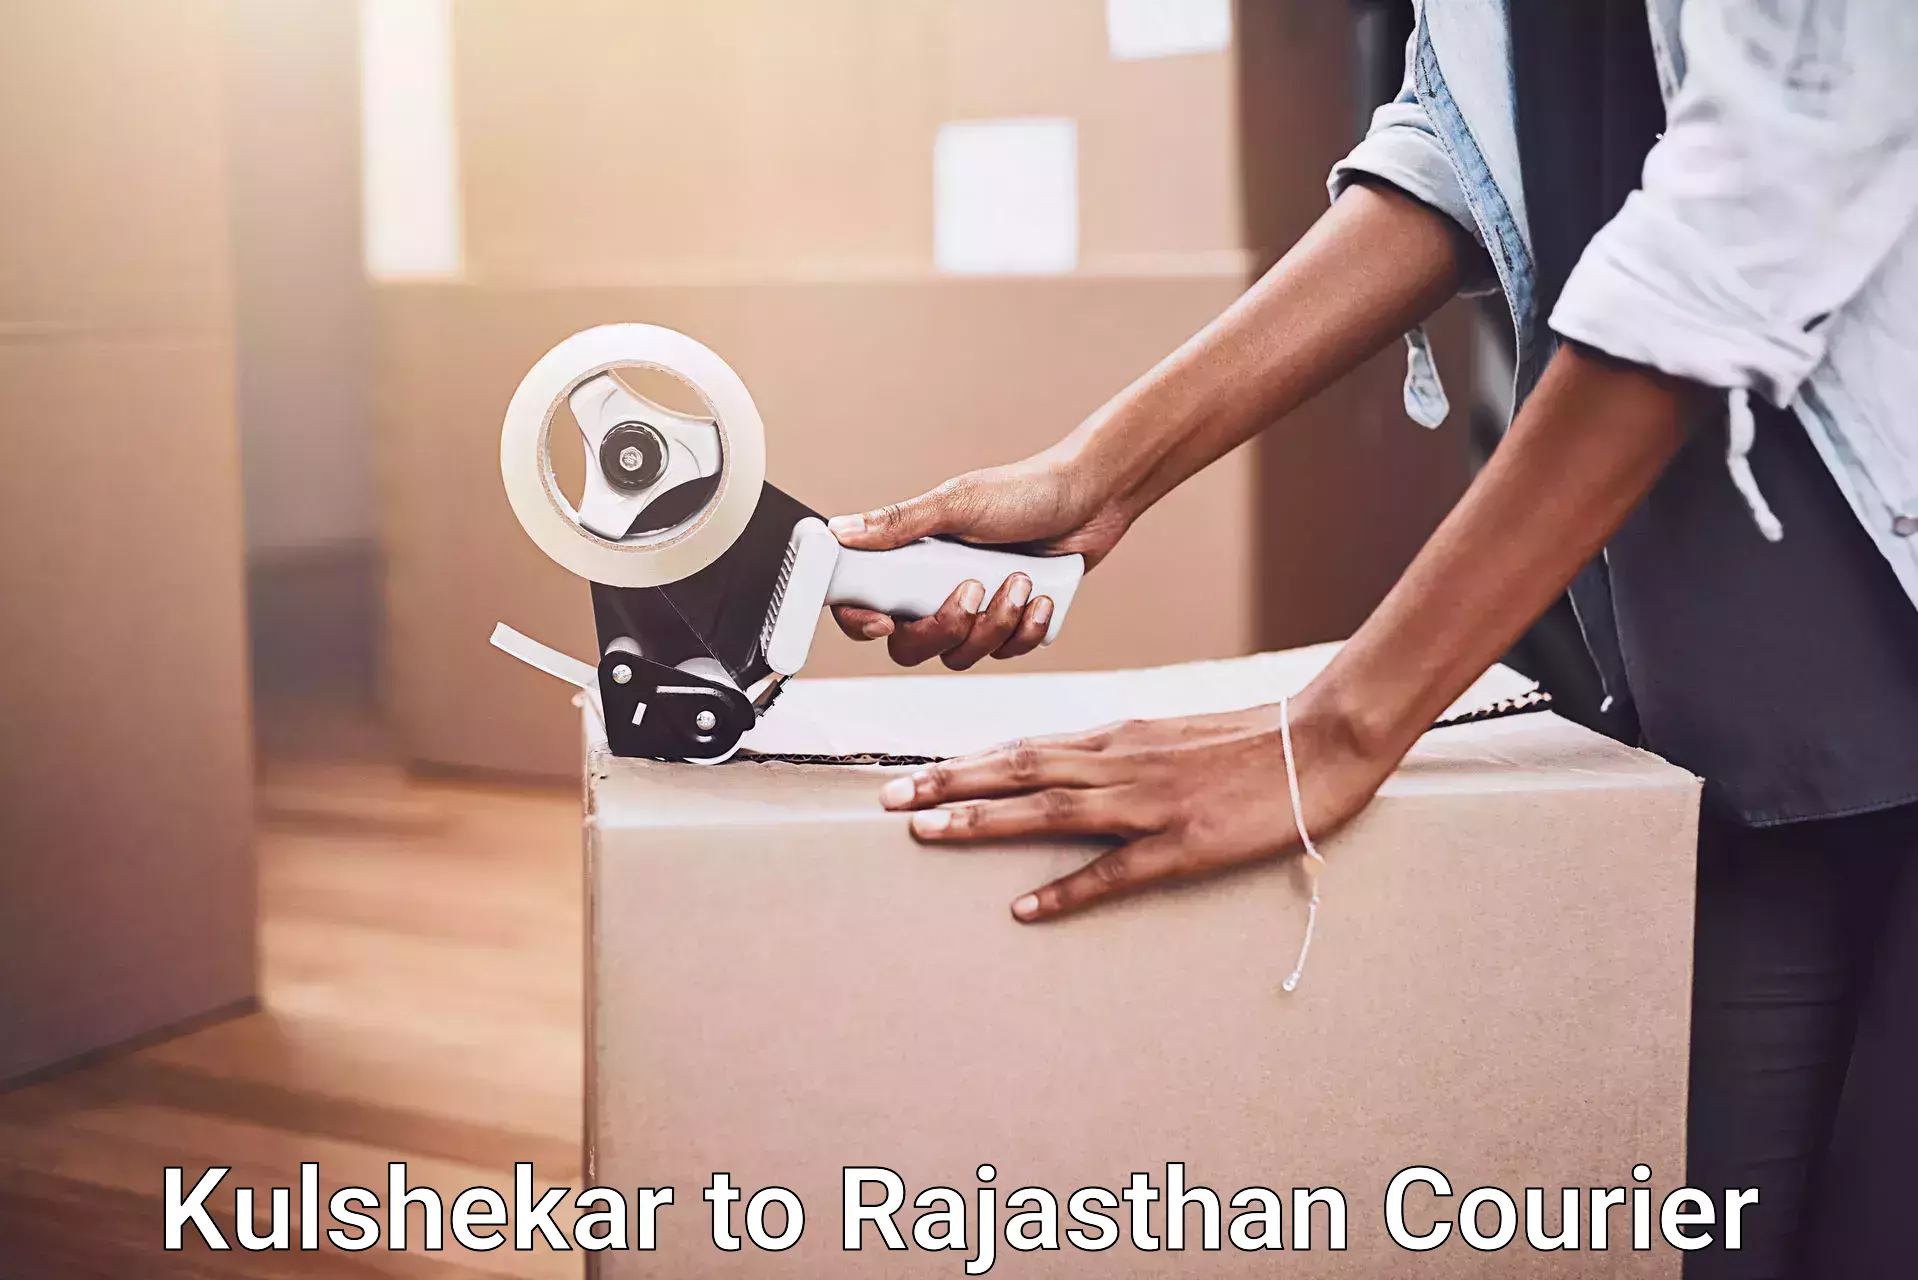 Furniture moving experts Kulshekar to Rajasthan